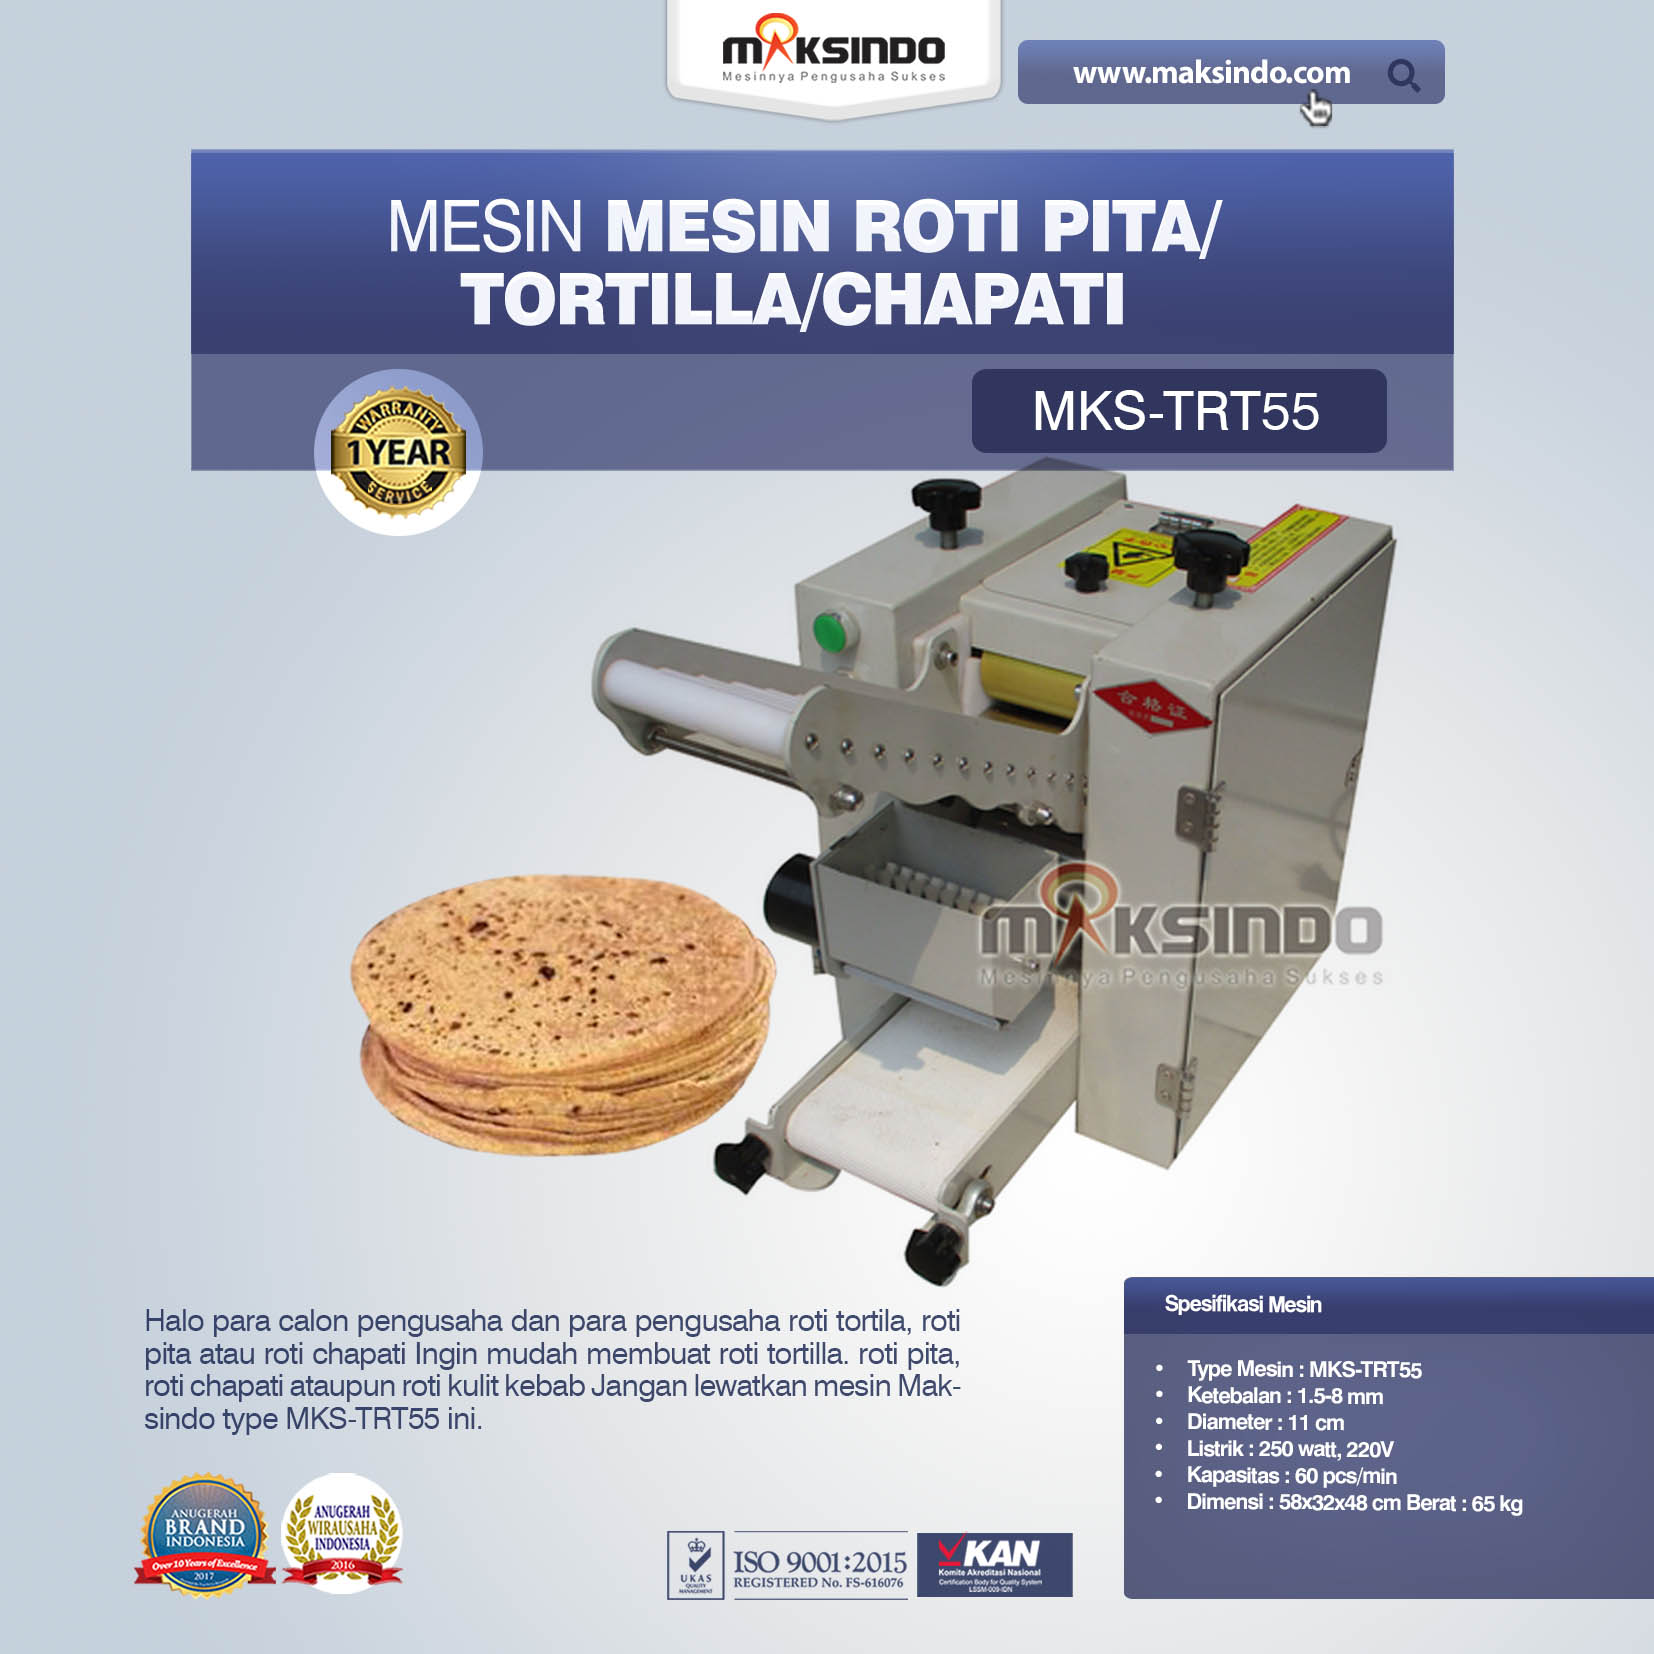 Jual Mesin Roti Pita/Tortilla/Chapati MKS-TRT55 Di Palembang